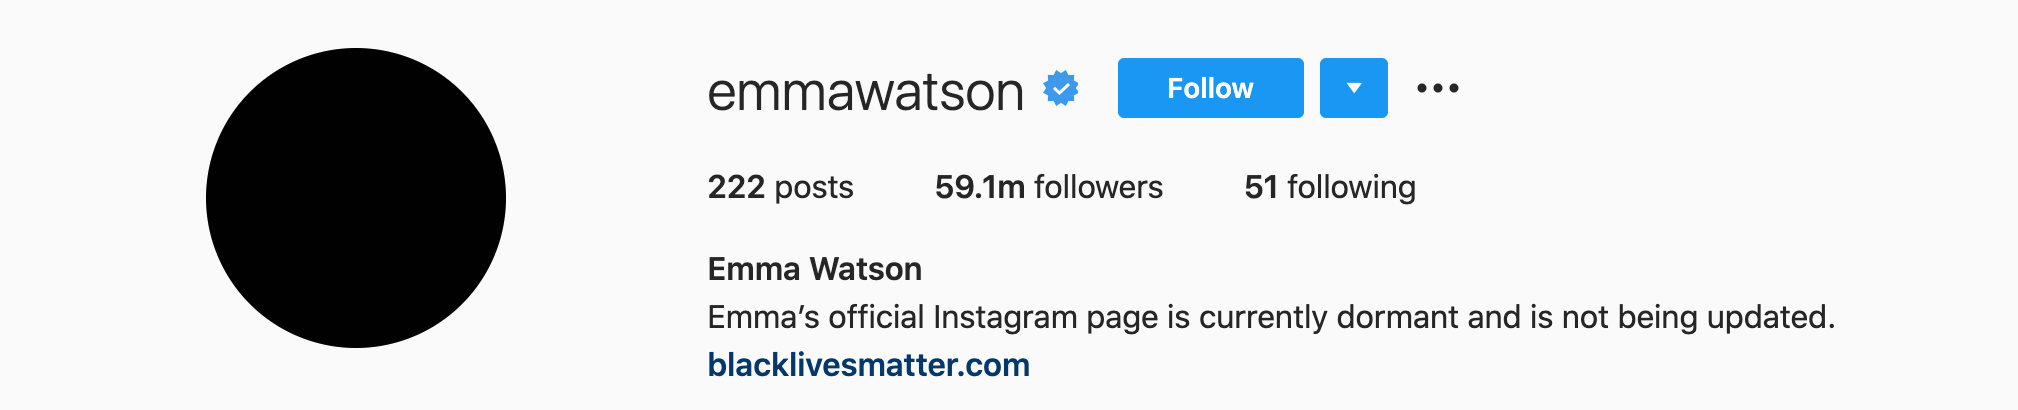 Top Instagram Influencers - EMMA WATSON